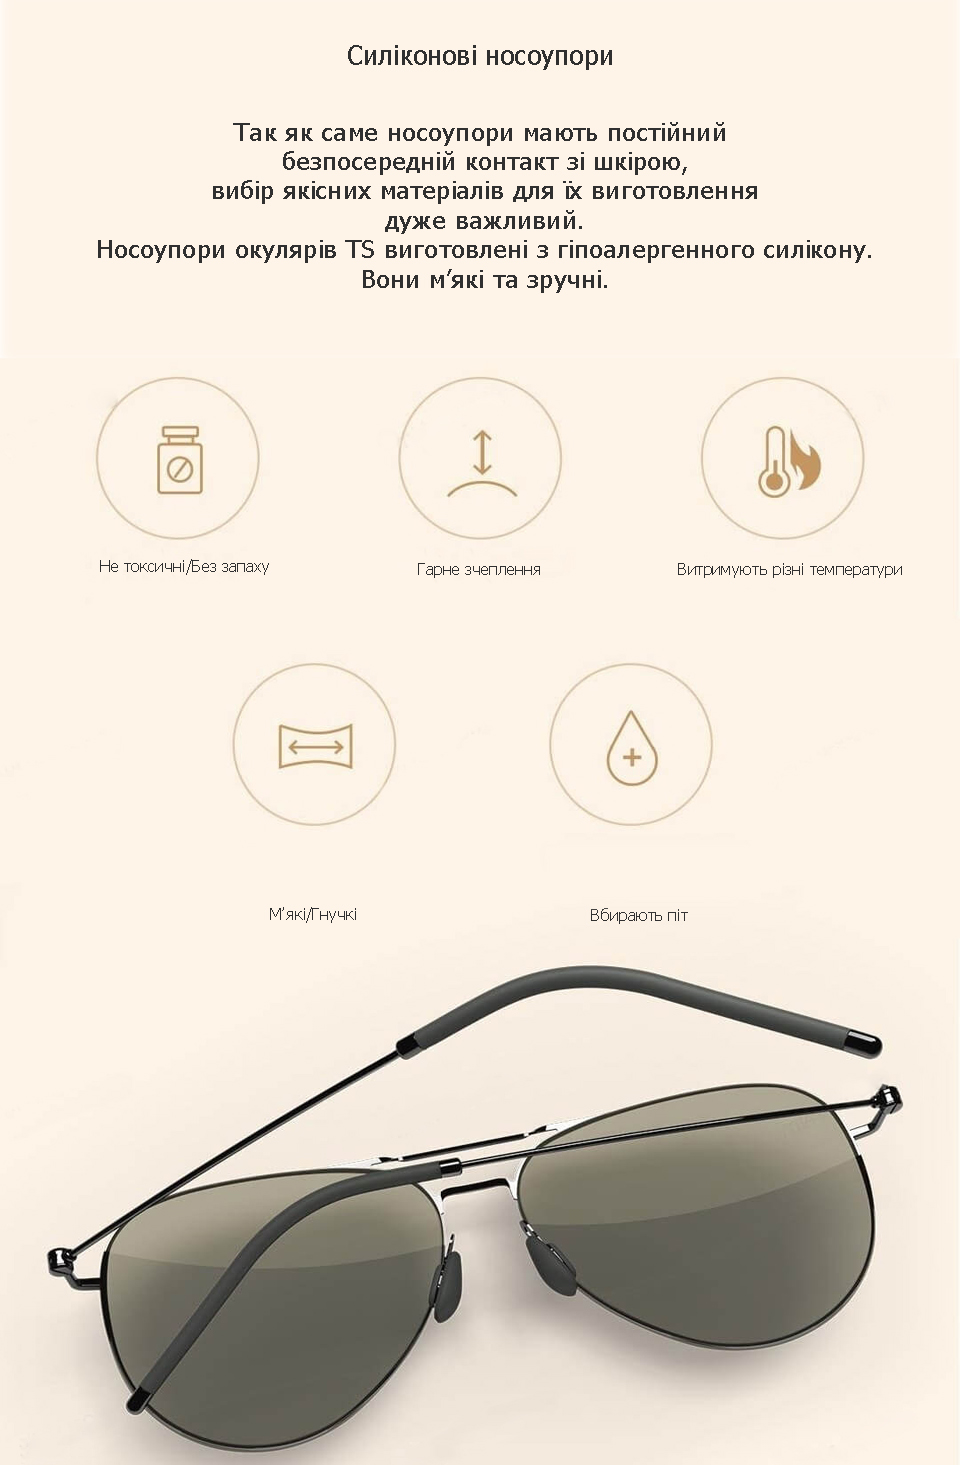 Окуляри Xiaomi Turok Steinhardt Sunglasses силіконові носоупори